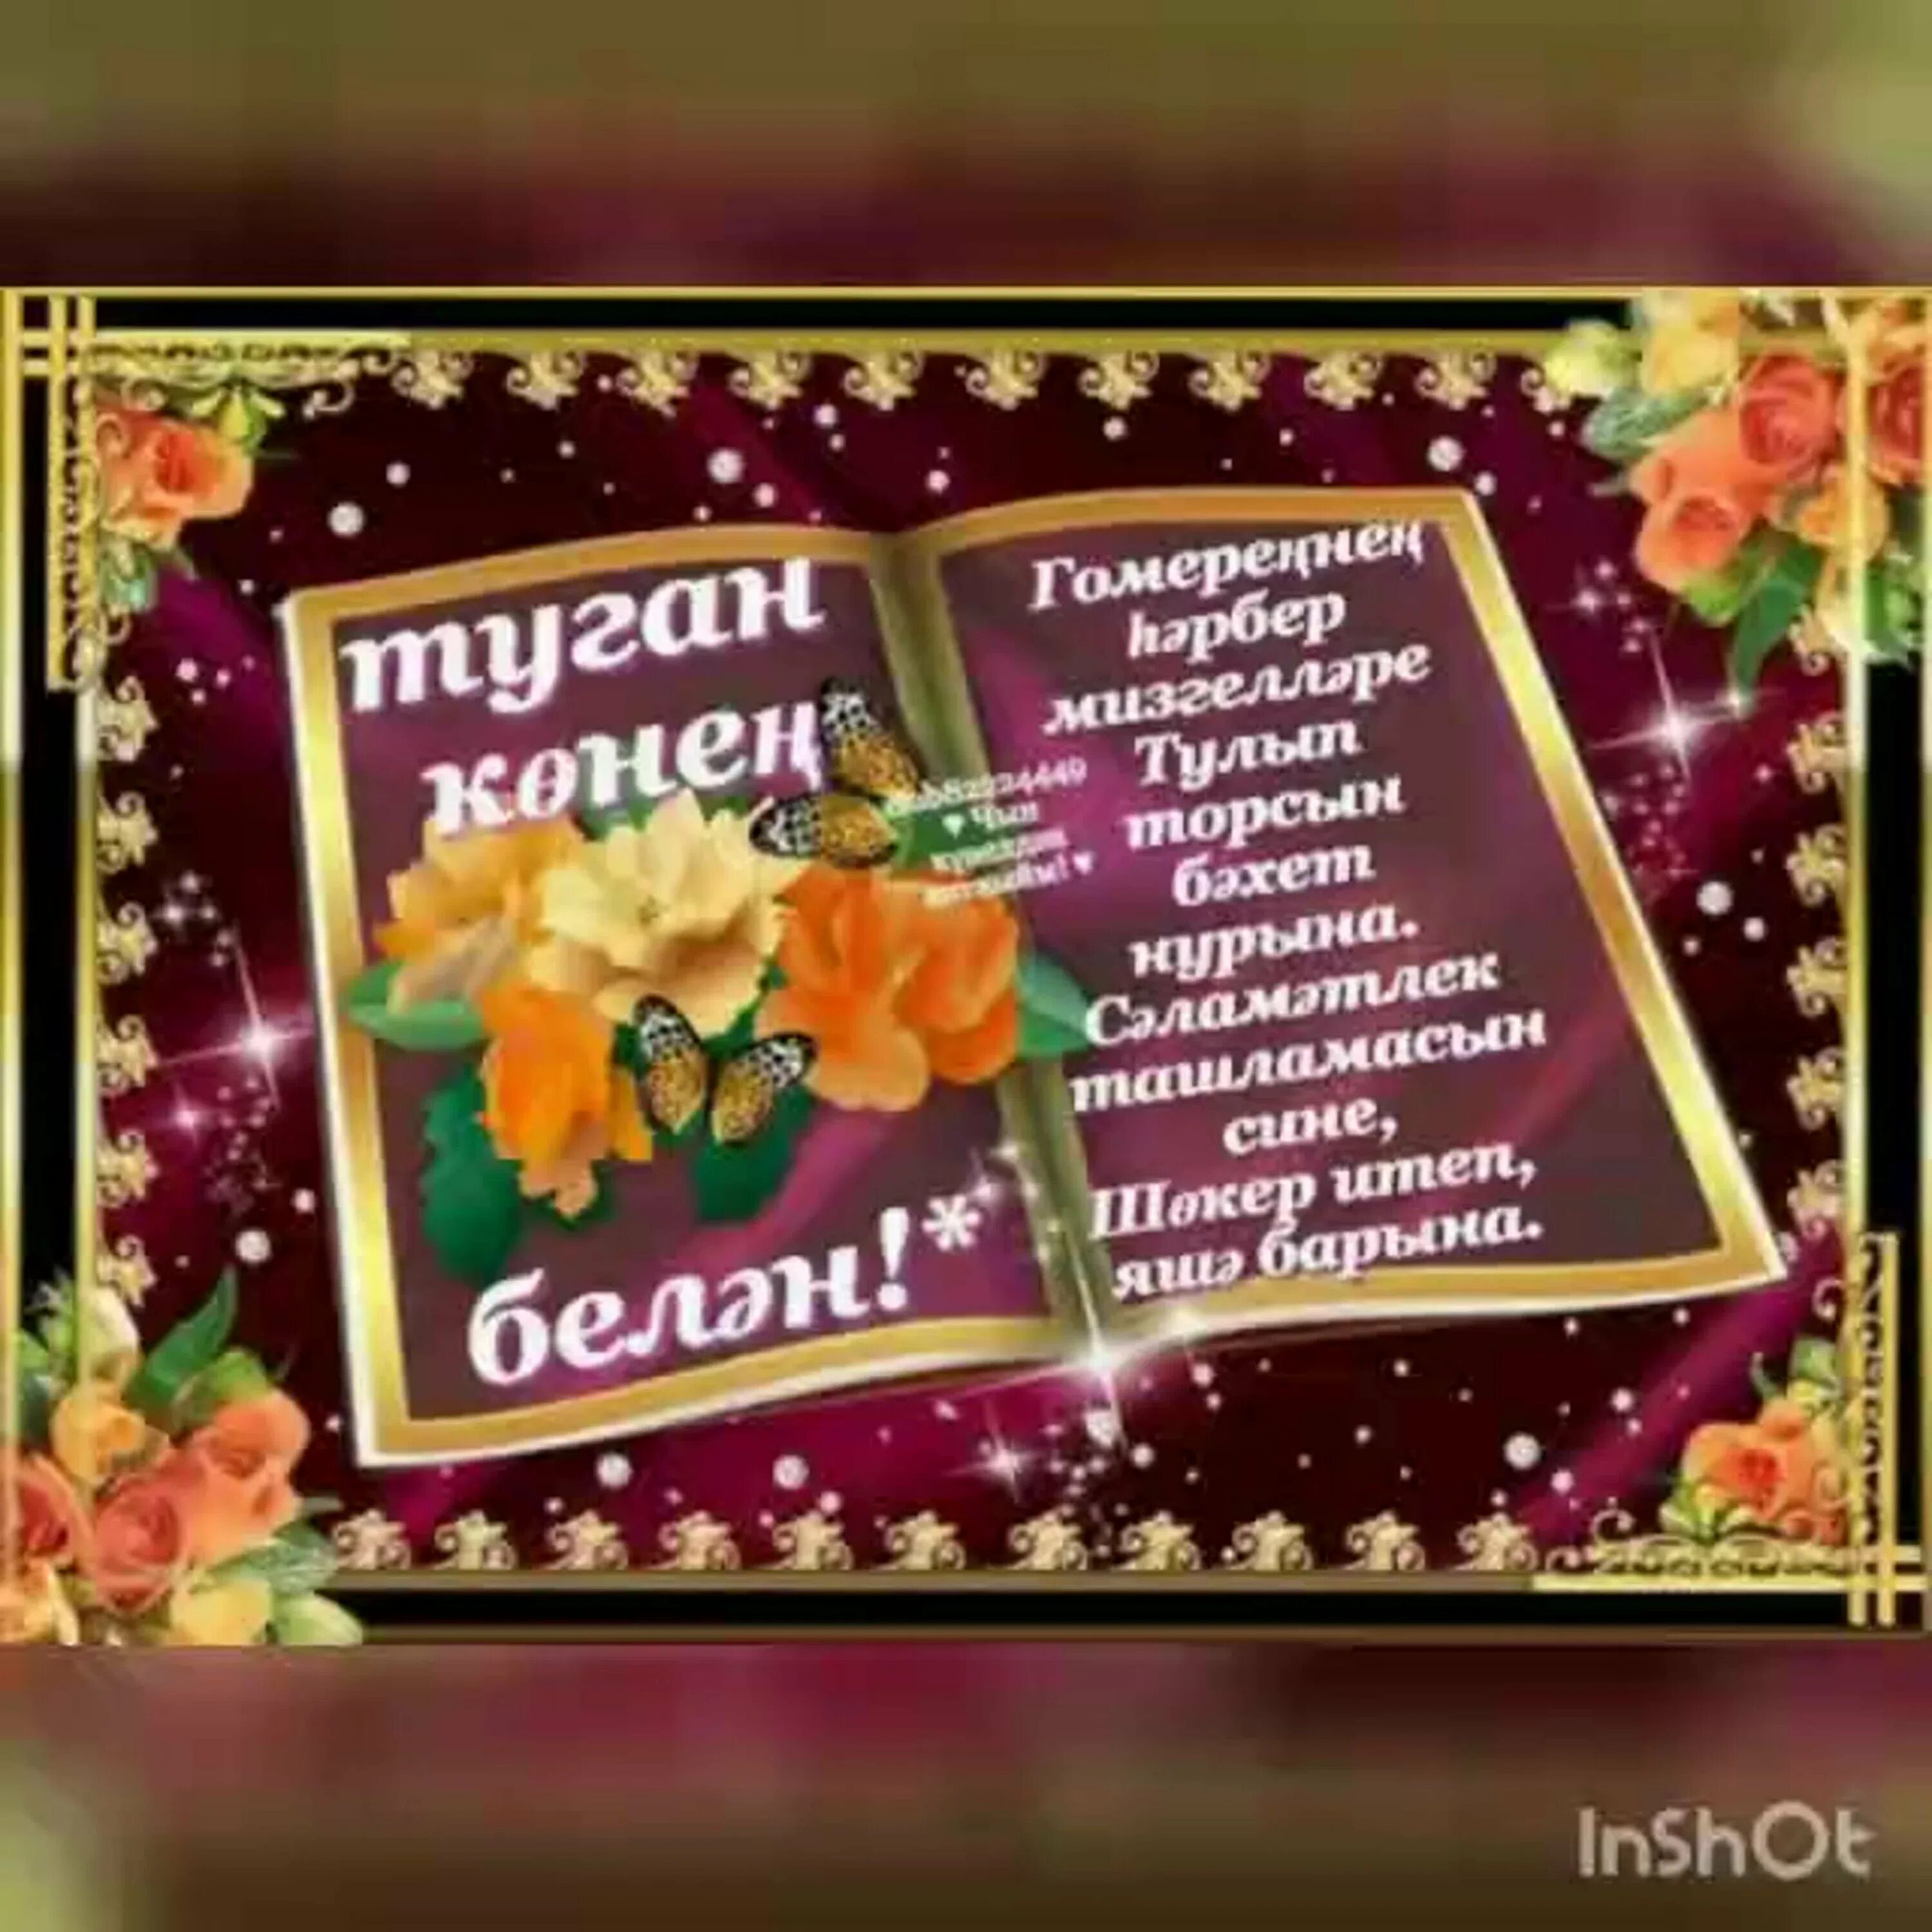 Поздравление туган конен. Поздравления с днём рождения на татарском языке. Поздравления с днём рождения мужчине на татарском языке. Поздравления с днем рождения на тата. Поздравления с днём с днём рождения на татарском языке.